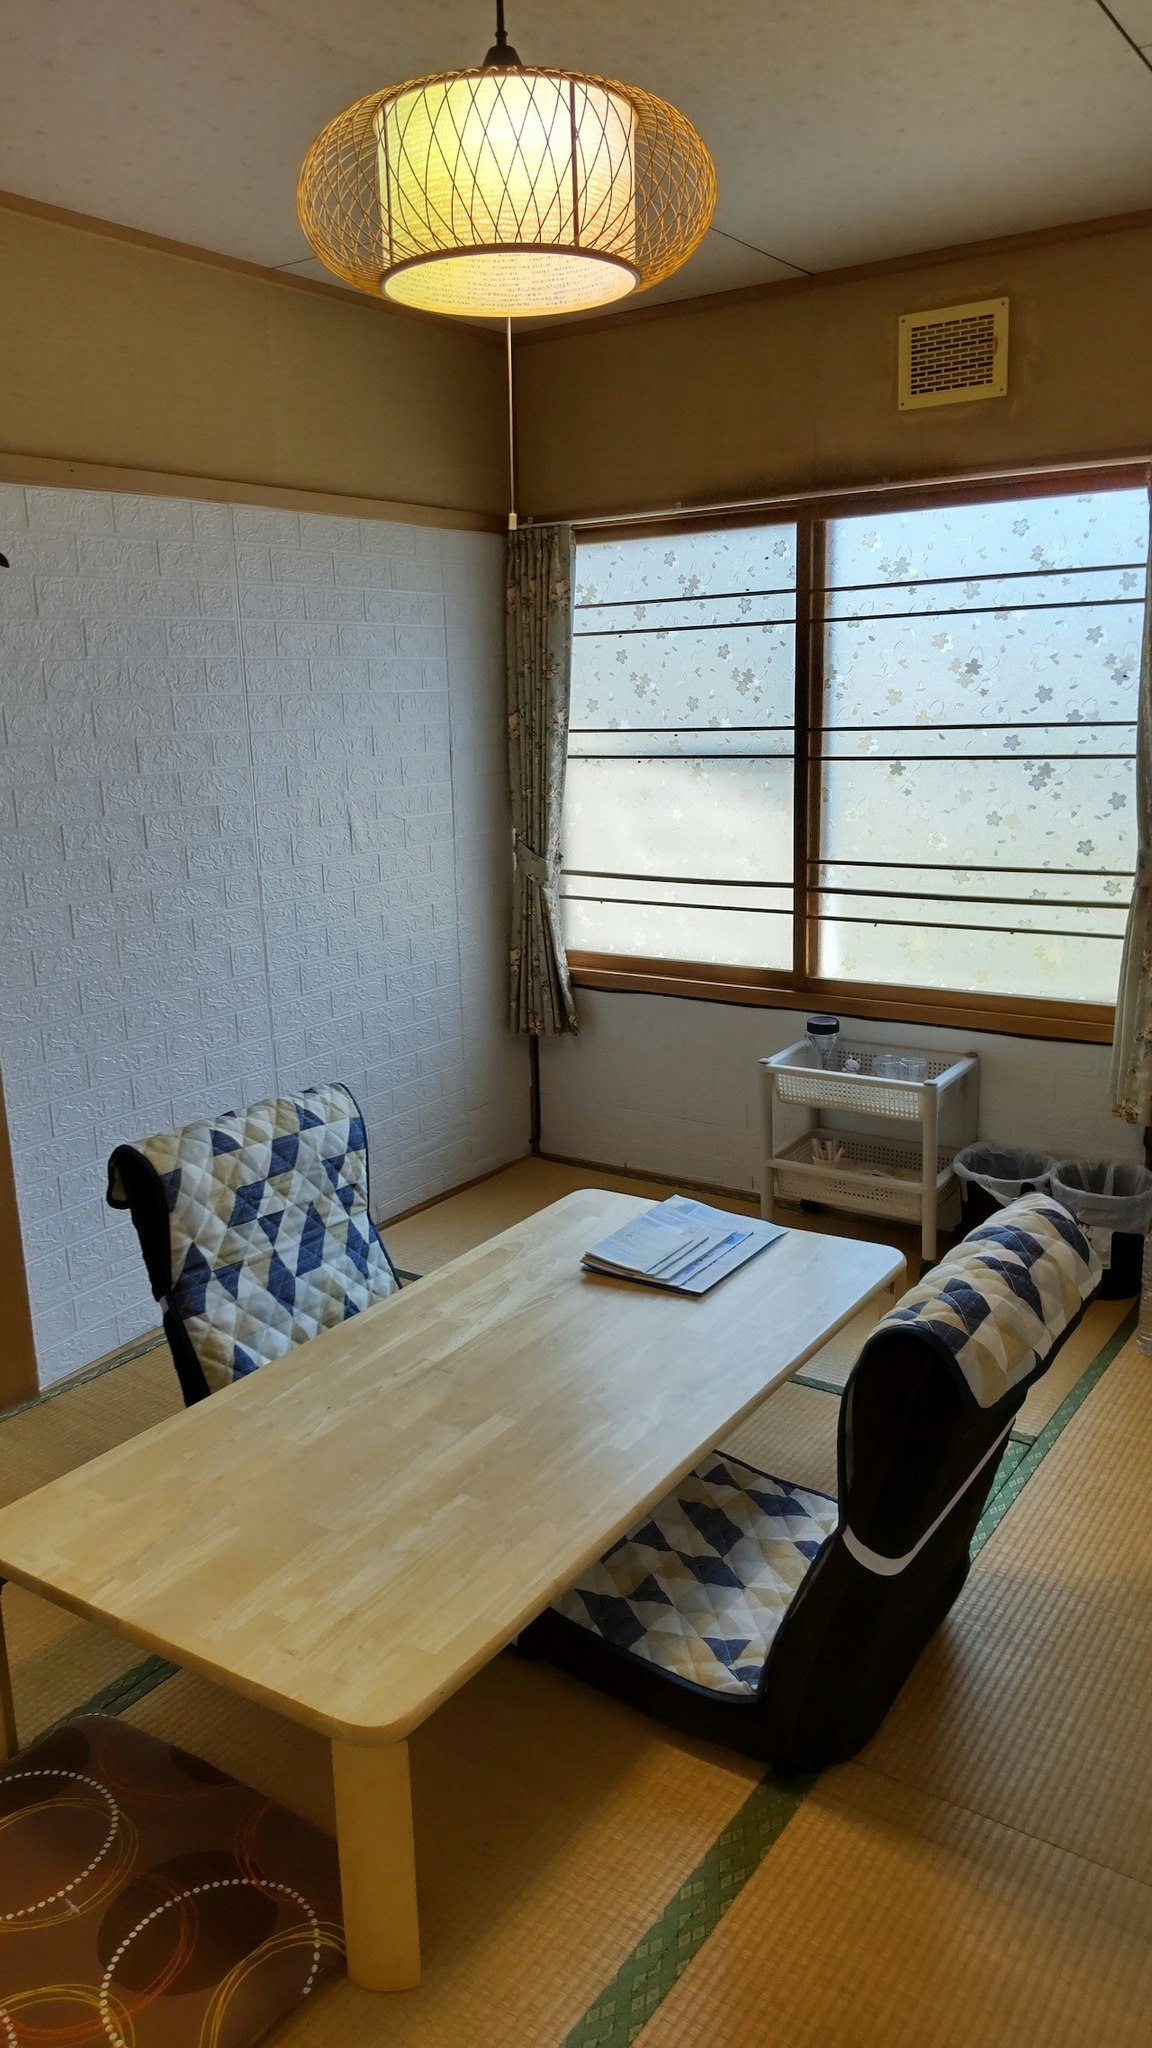 宿泊室1★最寄バス停から徒歩10分♪北海道北湯沢温泉が楽しめます!